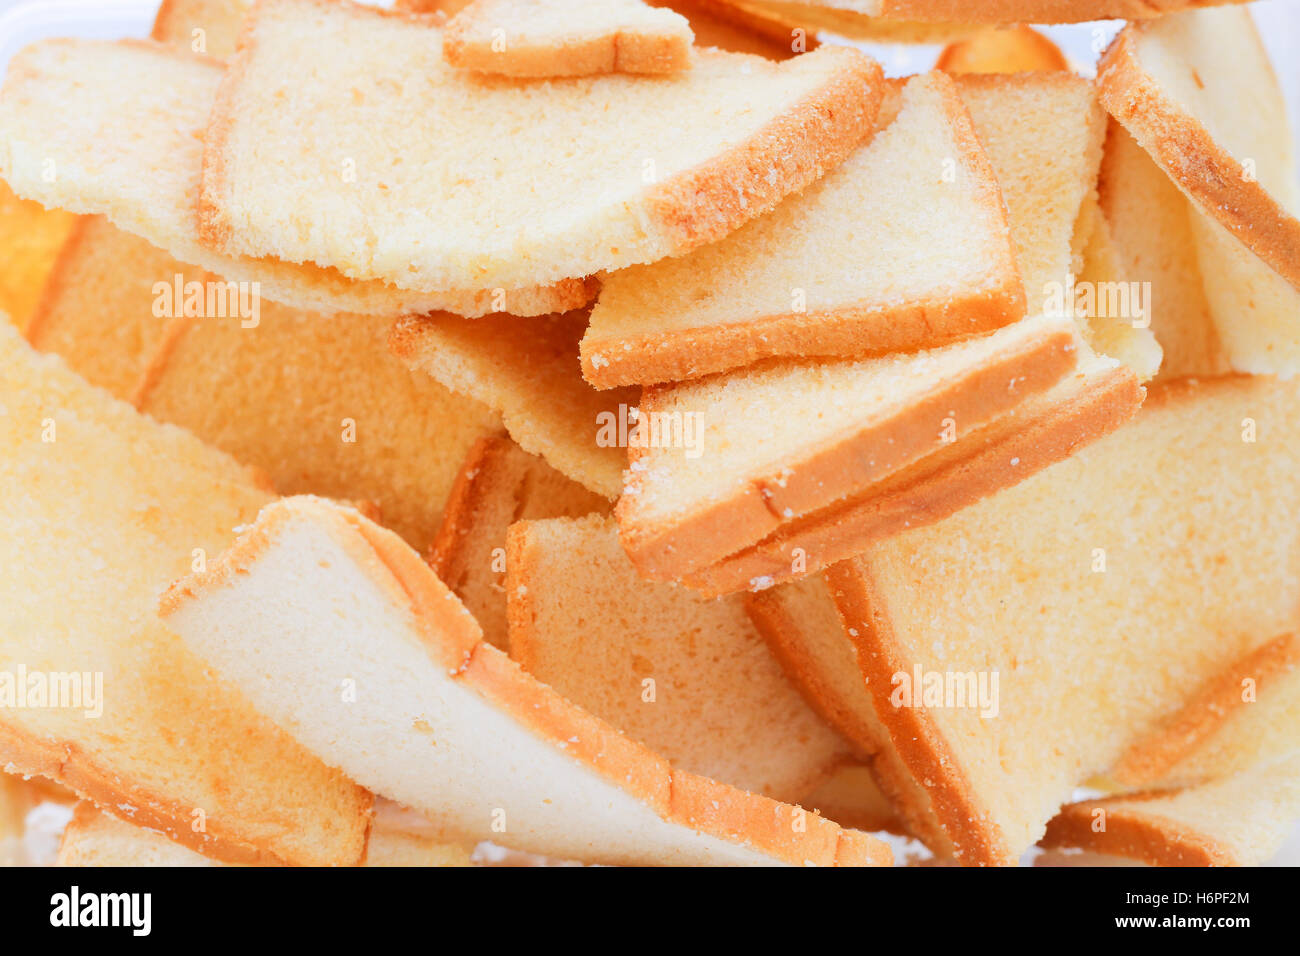 Scheibe Toast Brot Hintergrundtextur Stockfoto